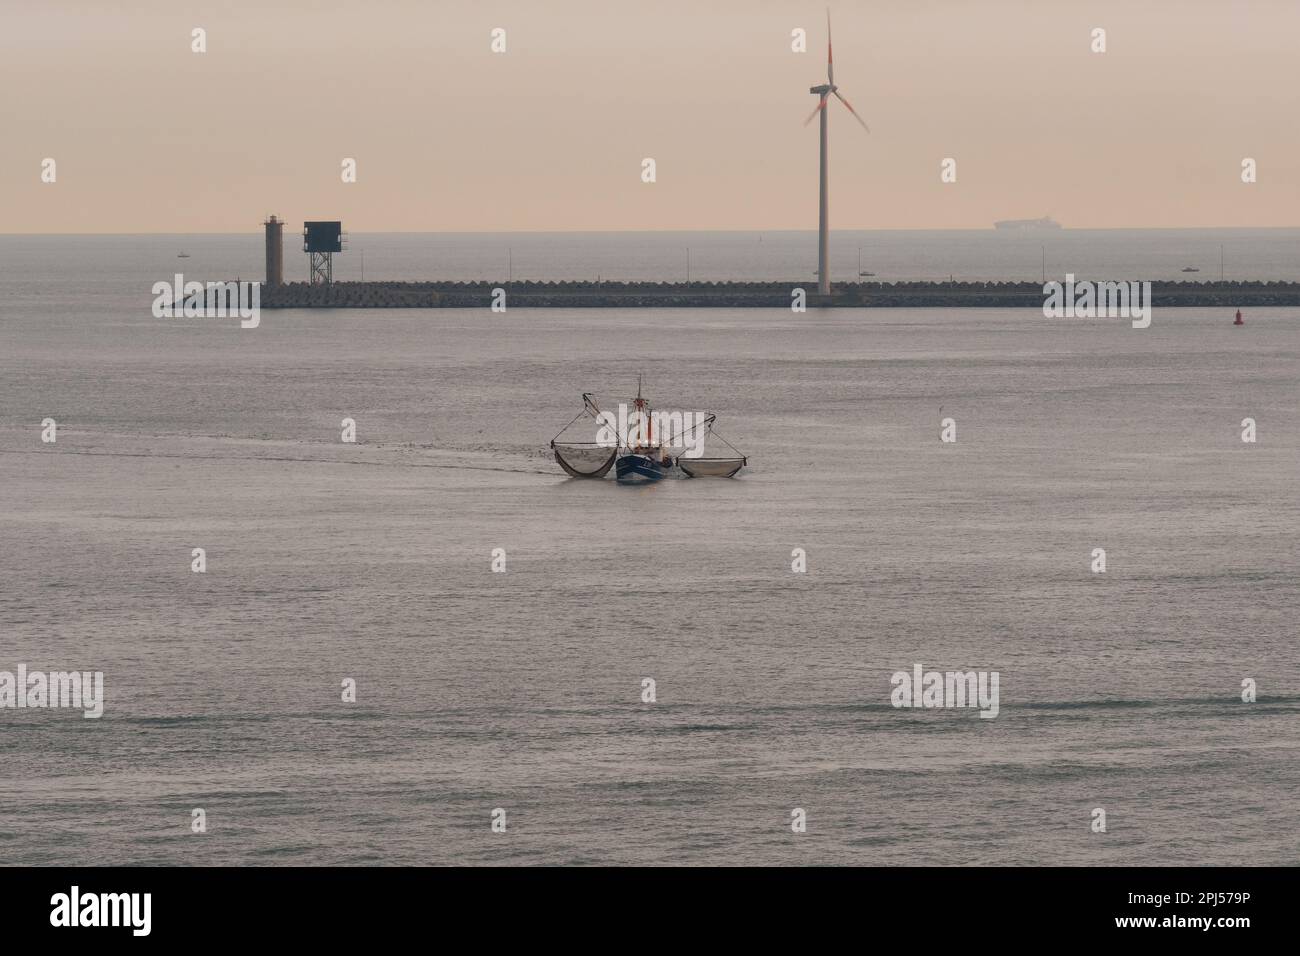 Il peschereccio Goede Hoop entra nel porto di Zeebrugge all'alba, in Belgio, nell'agosto 2017. Fotografo: Bryn Colton Foto Stock